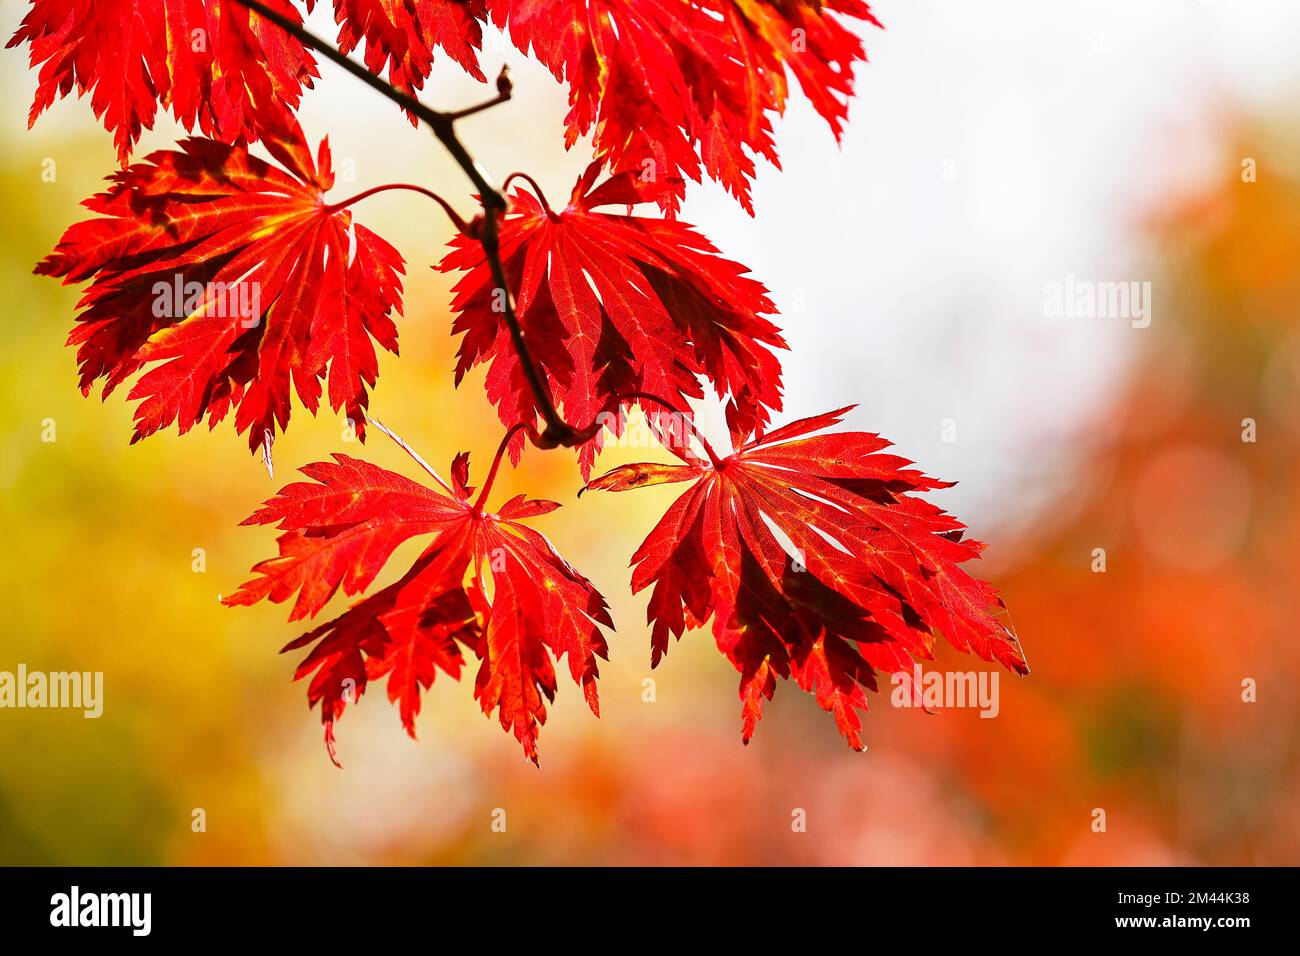 Fullmoon maple (Acer japonicum Aconitifolium) ornamental form Aconitifolium leaves in autumn colouring, Germany Stock Photo